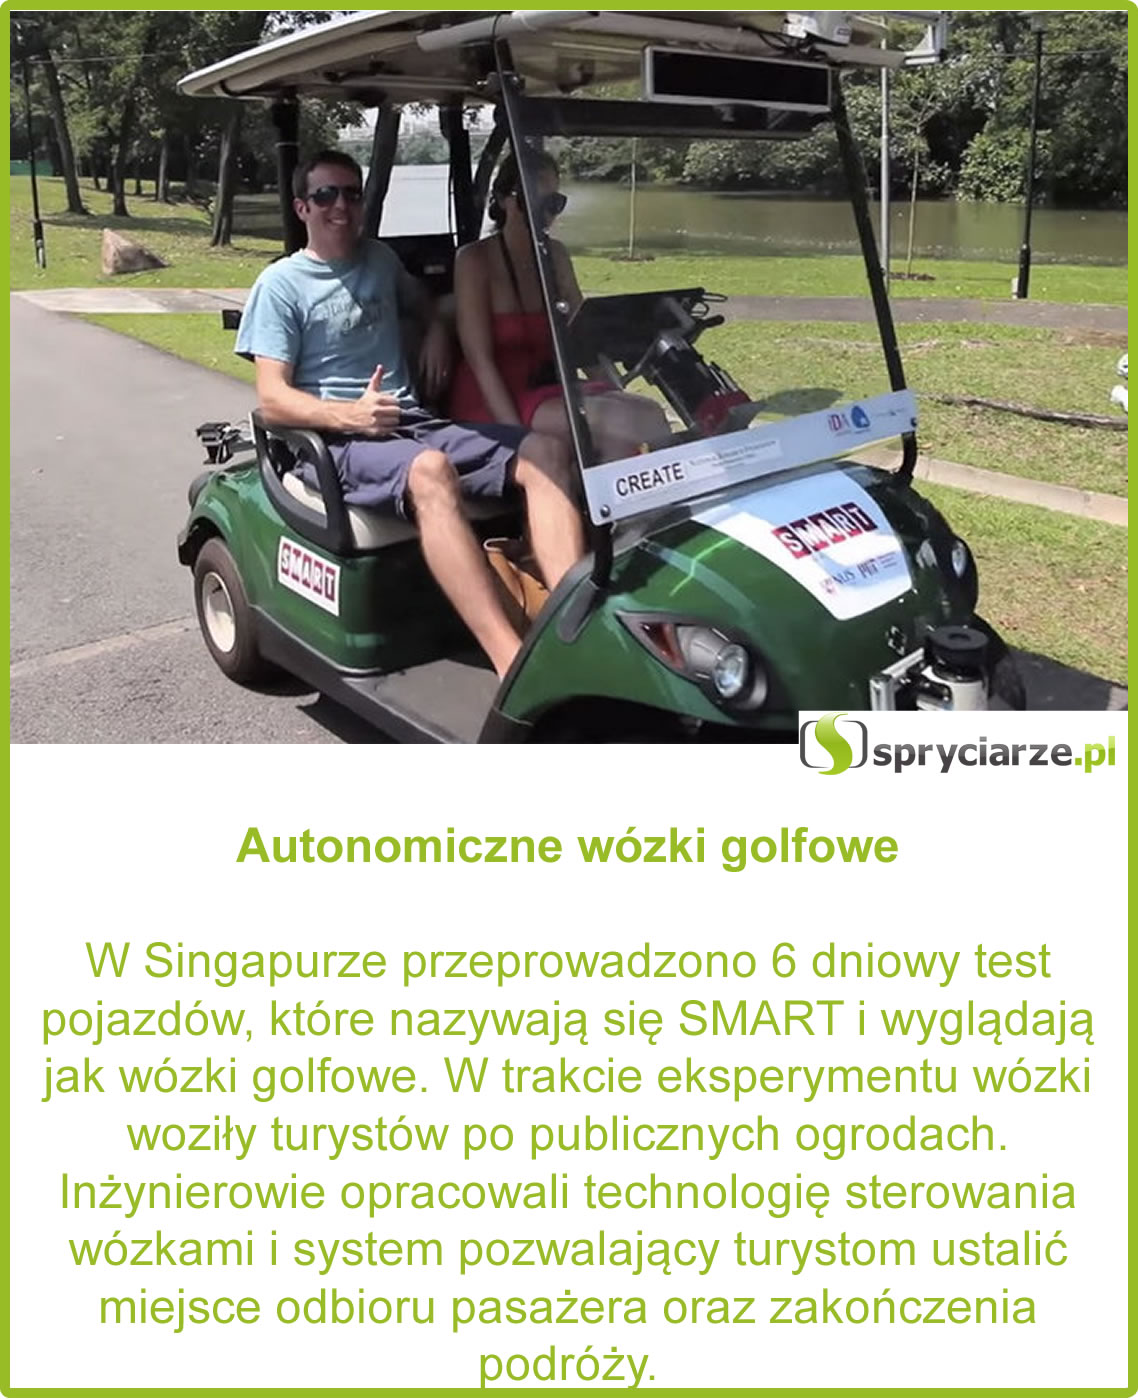 Autonomiczne wózki golfowe